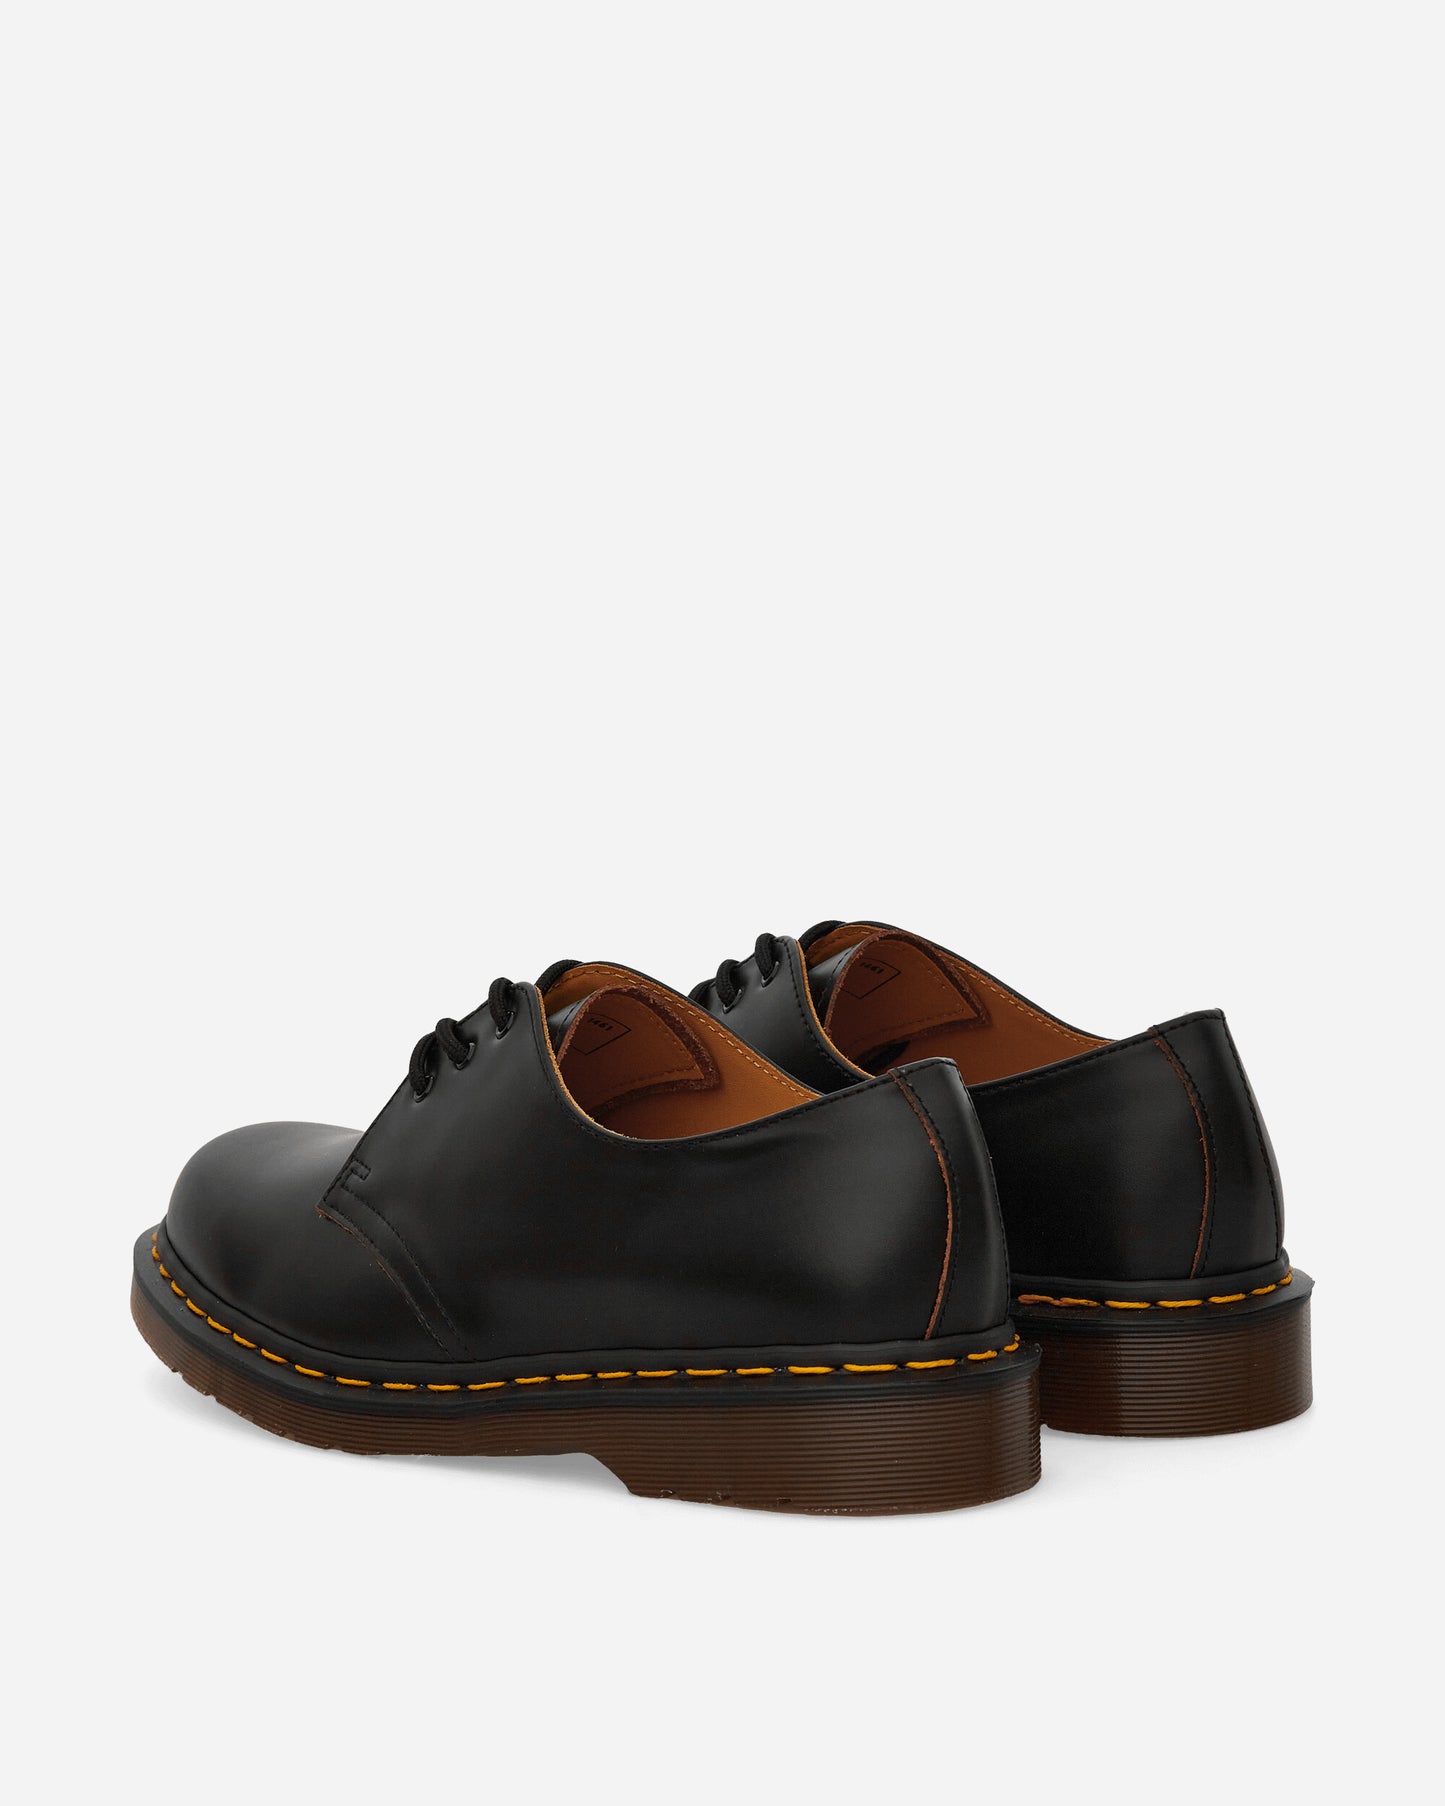 Dr. Martens Vintage 1461 Black Classic Shoes Oxford 12877001